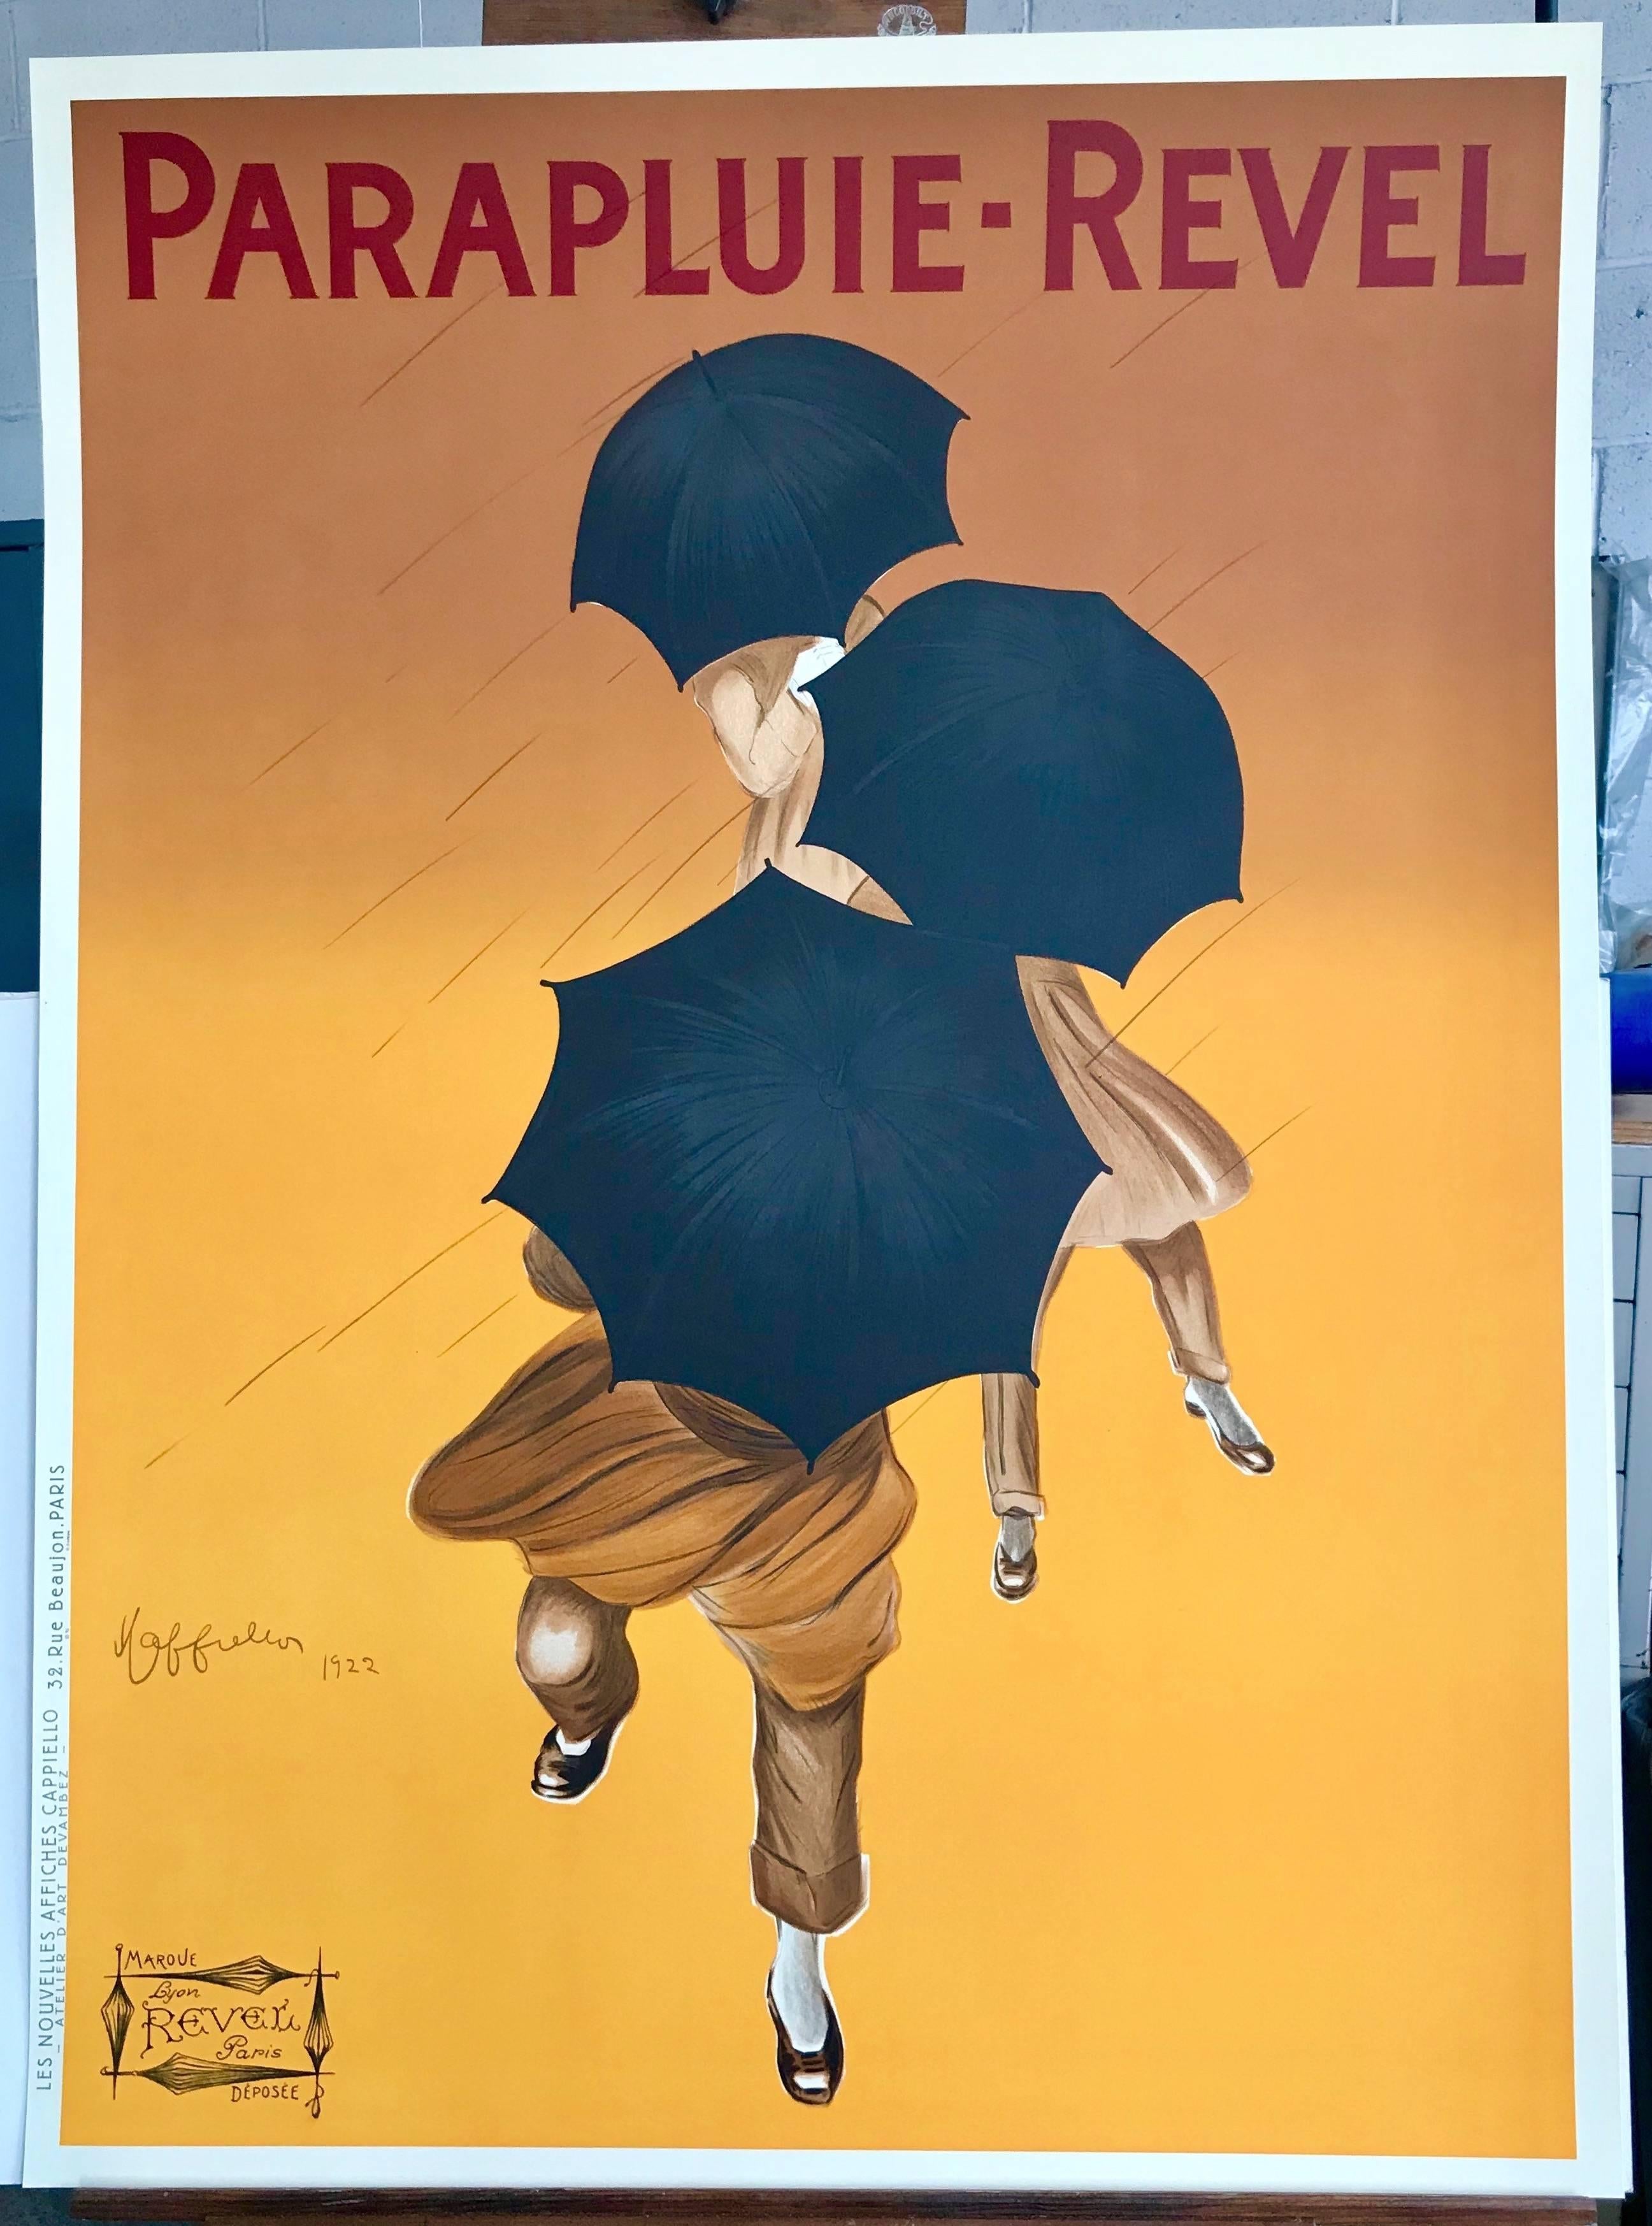 Leonetto Cappiello - Parapluie Revel, French Umbrellas Hand Drawn 